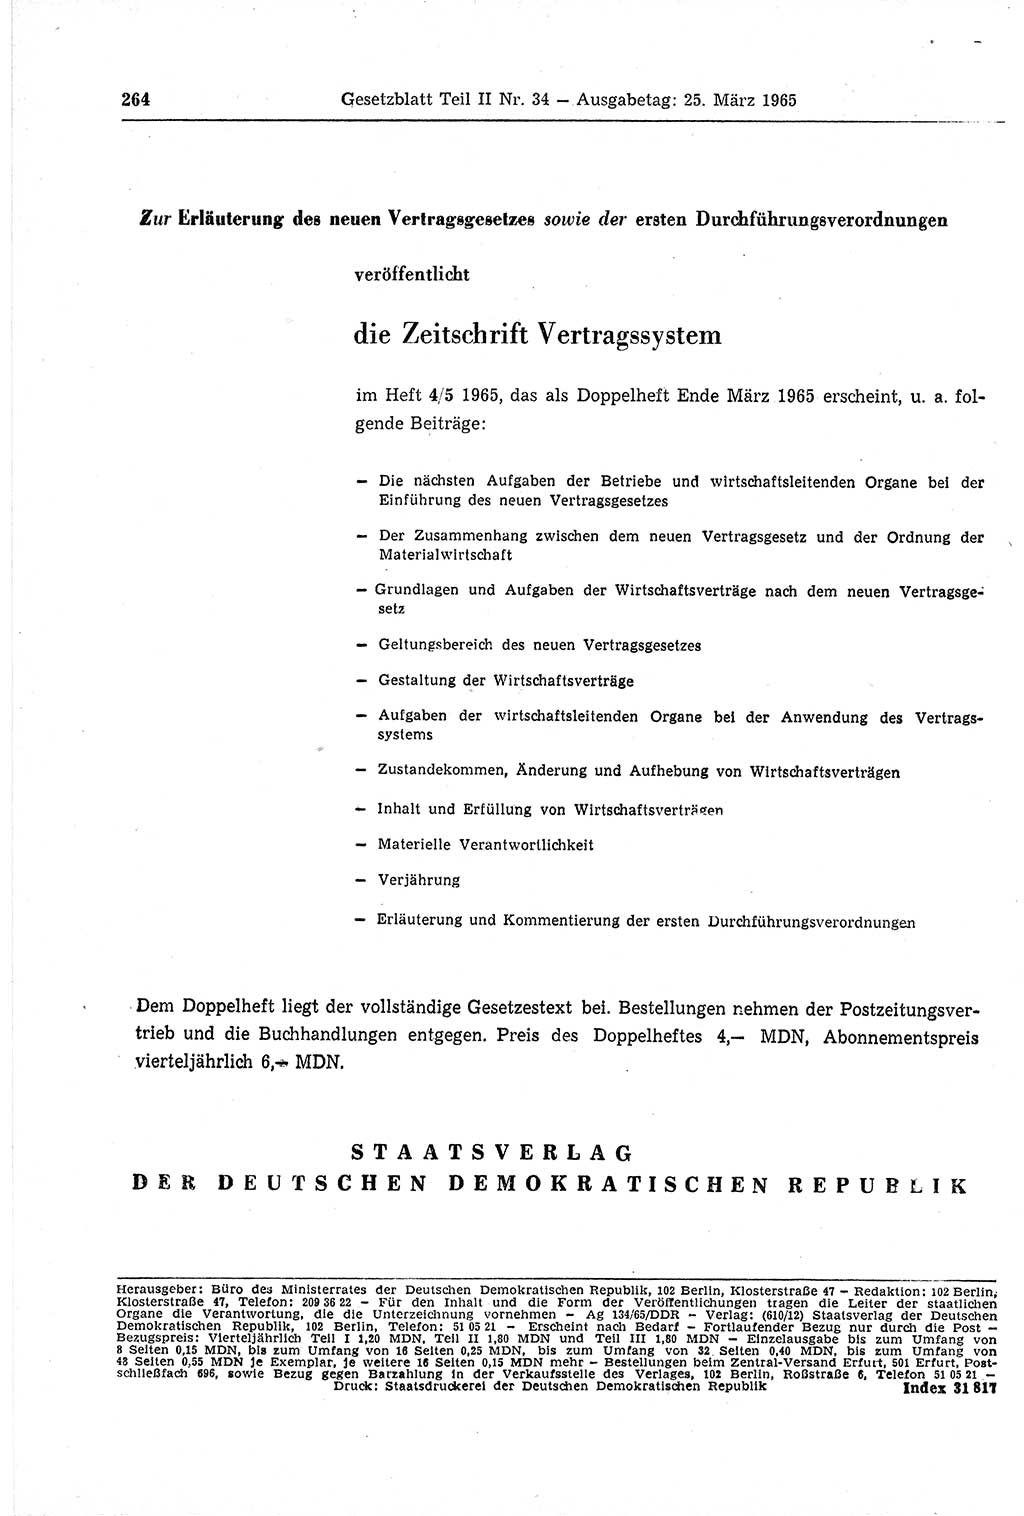 Gesetzblatt (GBl.) der Deutschen Demokratischen Republik (DDR) Teil ⅠⅠ 1965, Seite 264 (GBl. DDR ⅠⅠ 1965, S. 264)